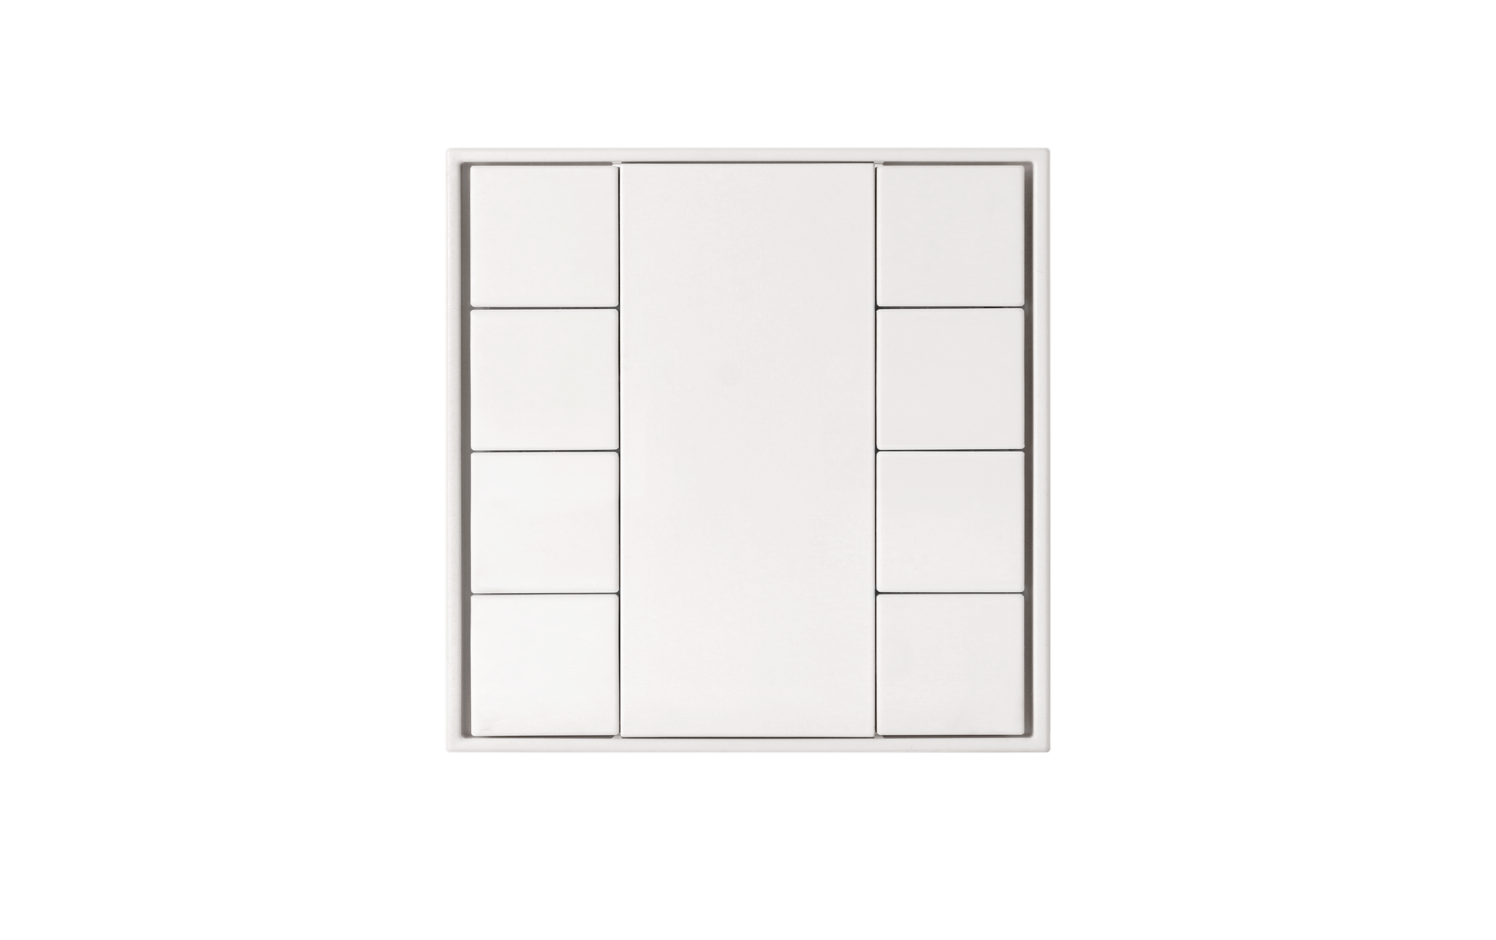 Model B DALI-2 Switch - 8 Button White Plastic